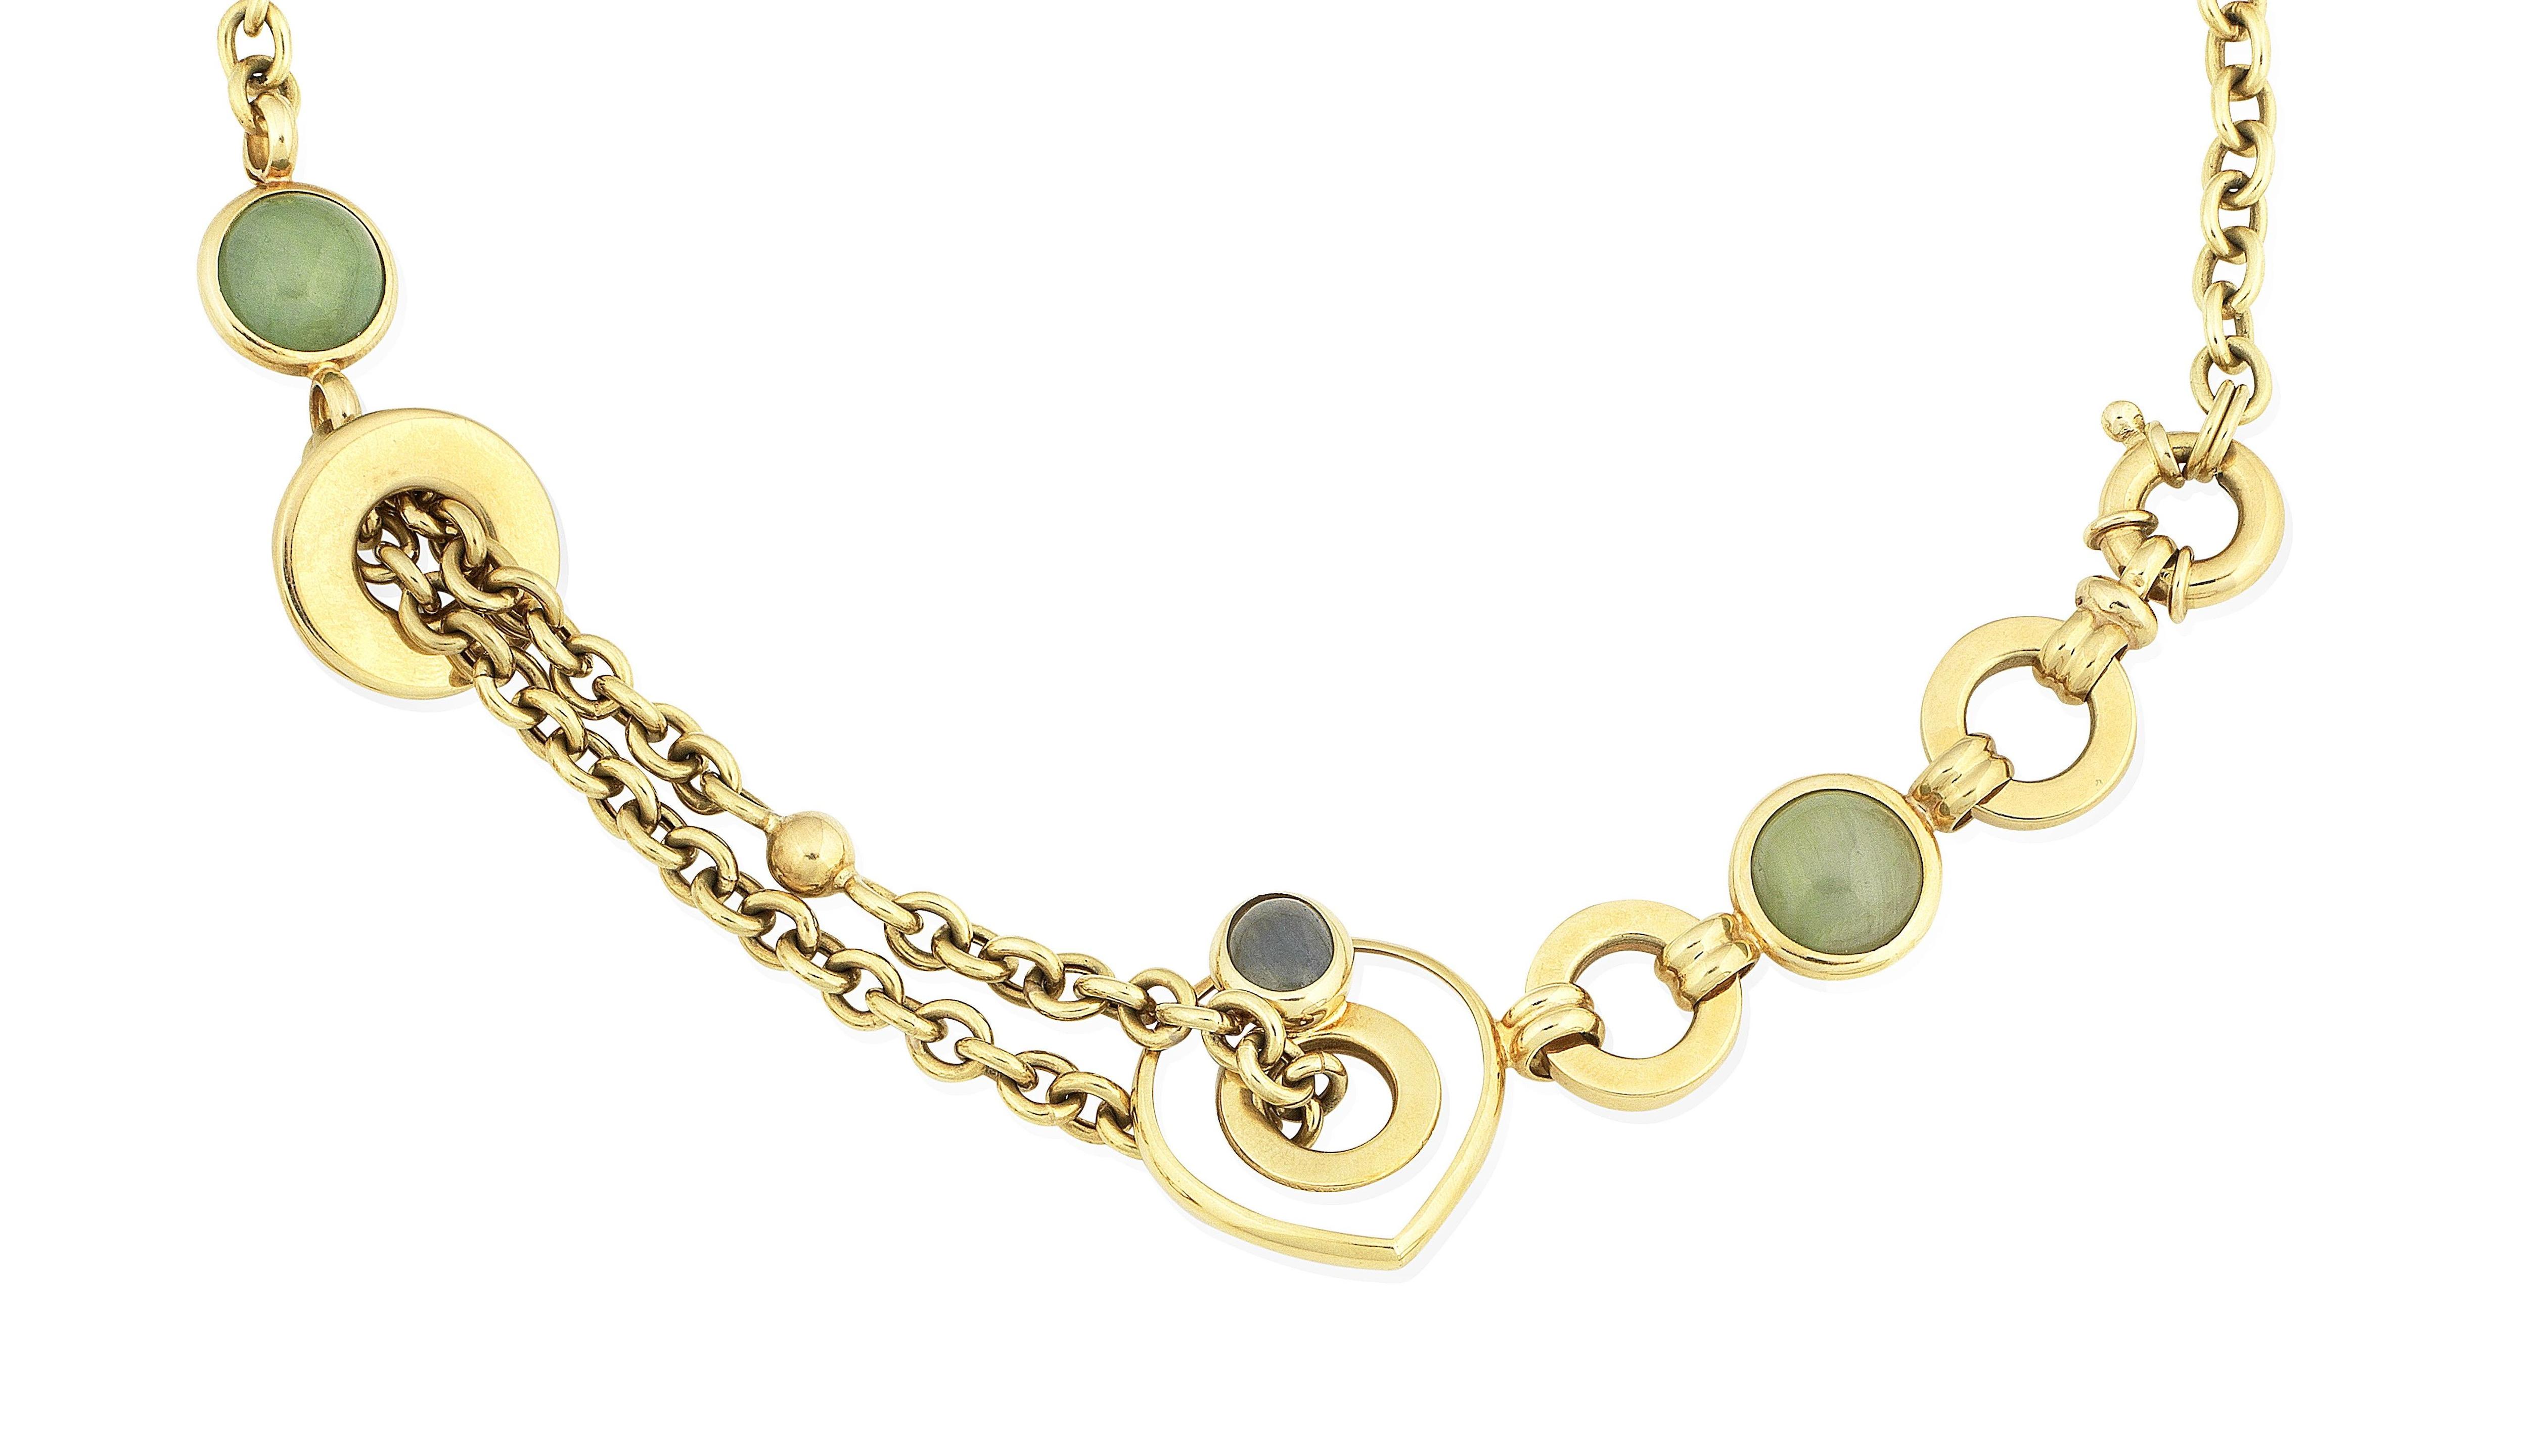 A gem-set cable-link necklace